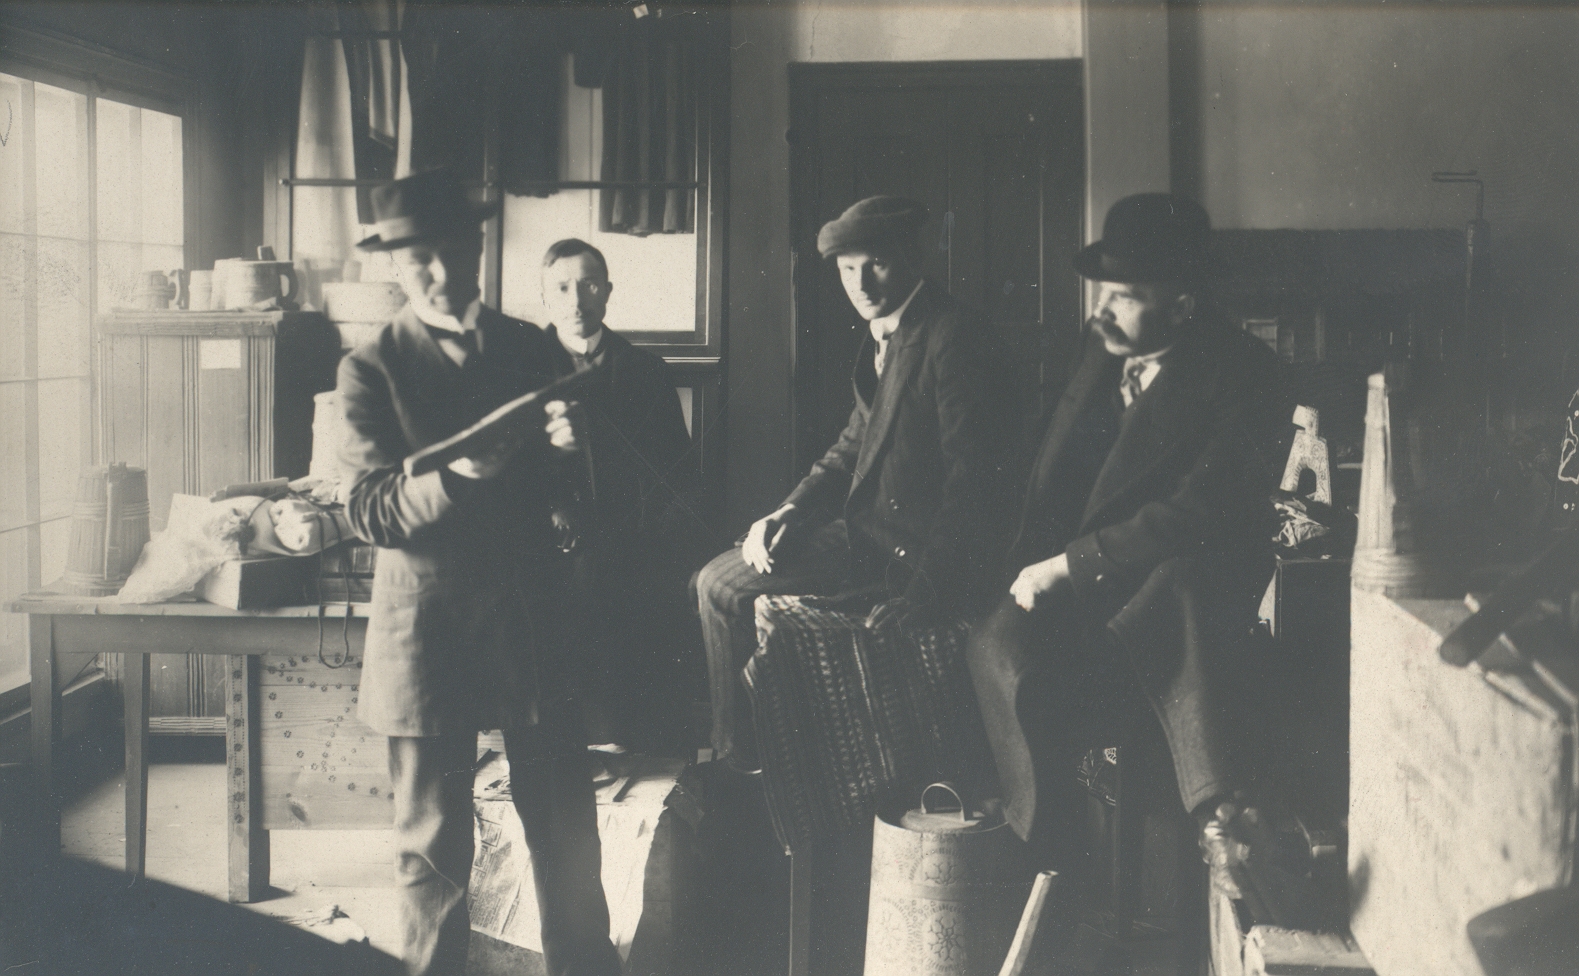 1. Iron, Christian; 2. Carpet, Gustav; 3. Eisenschmidt, Edgar; 4. Feed, K. e. - 1911 Rooms of "Vanemuise" company